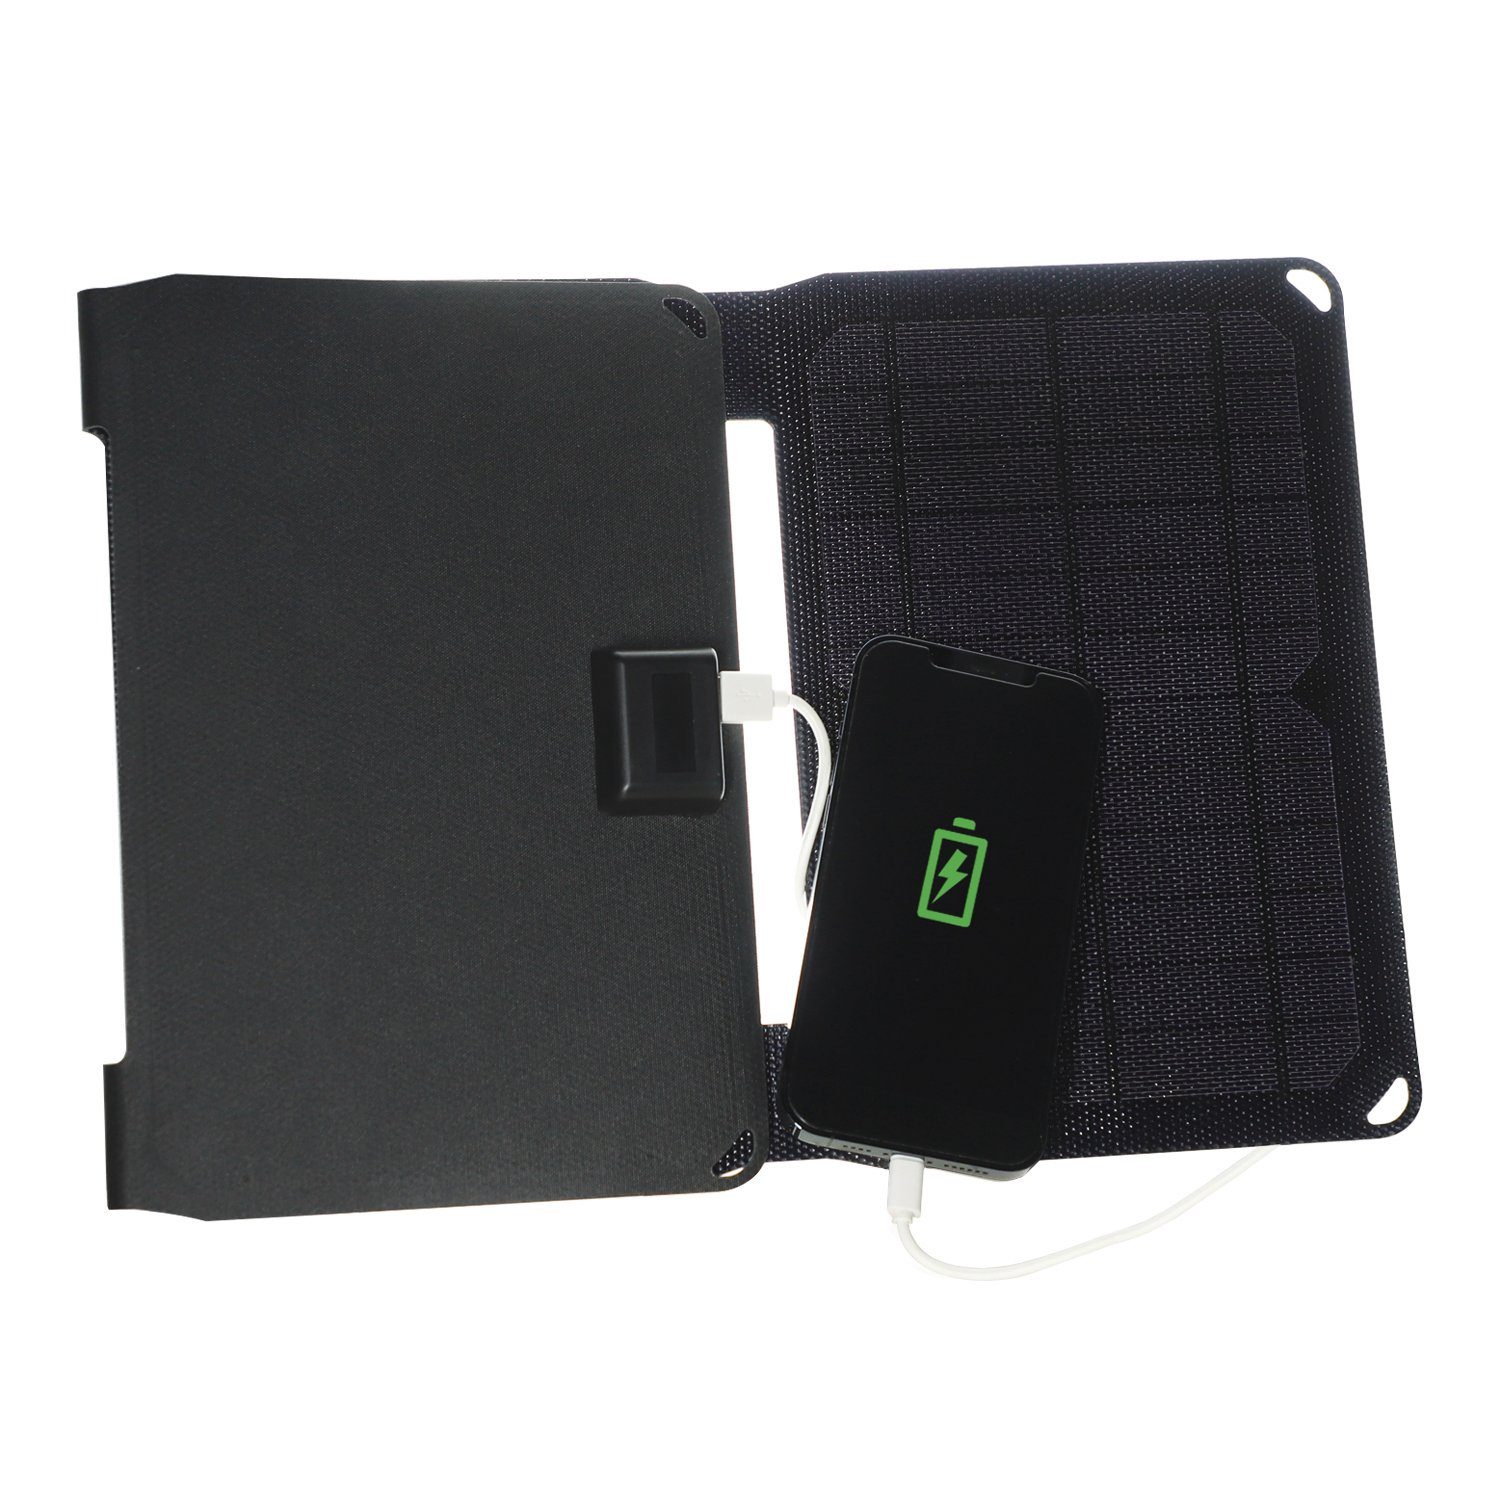 VoltSolar USB-A Panel Foldable Solarladegerät Solar 20W, 2x 4smarts